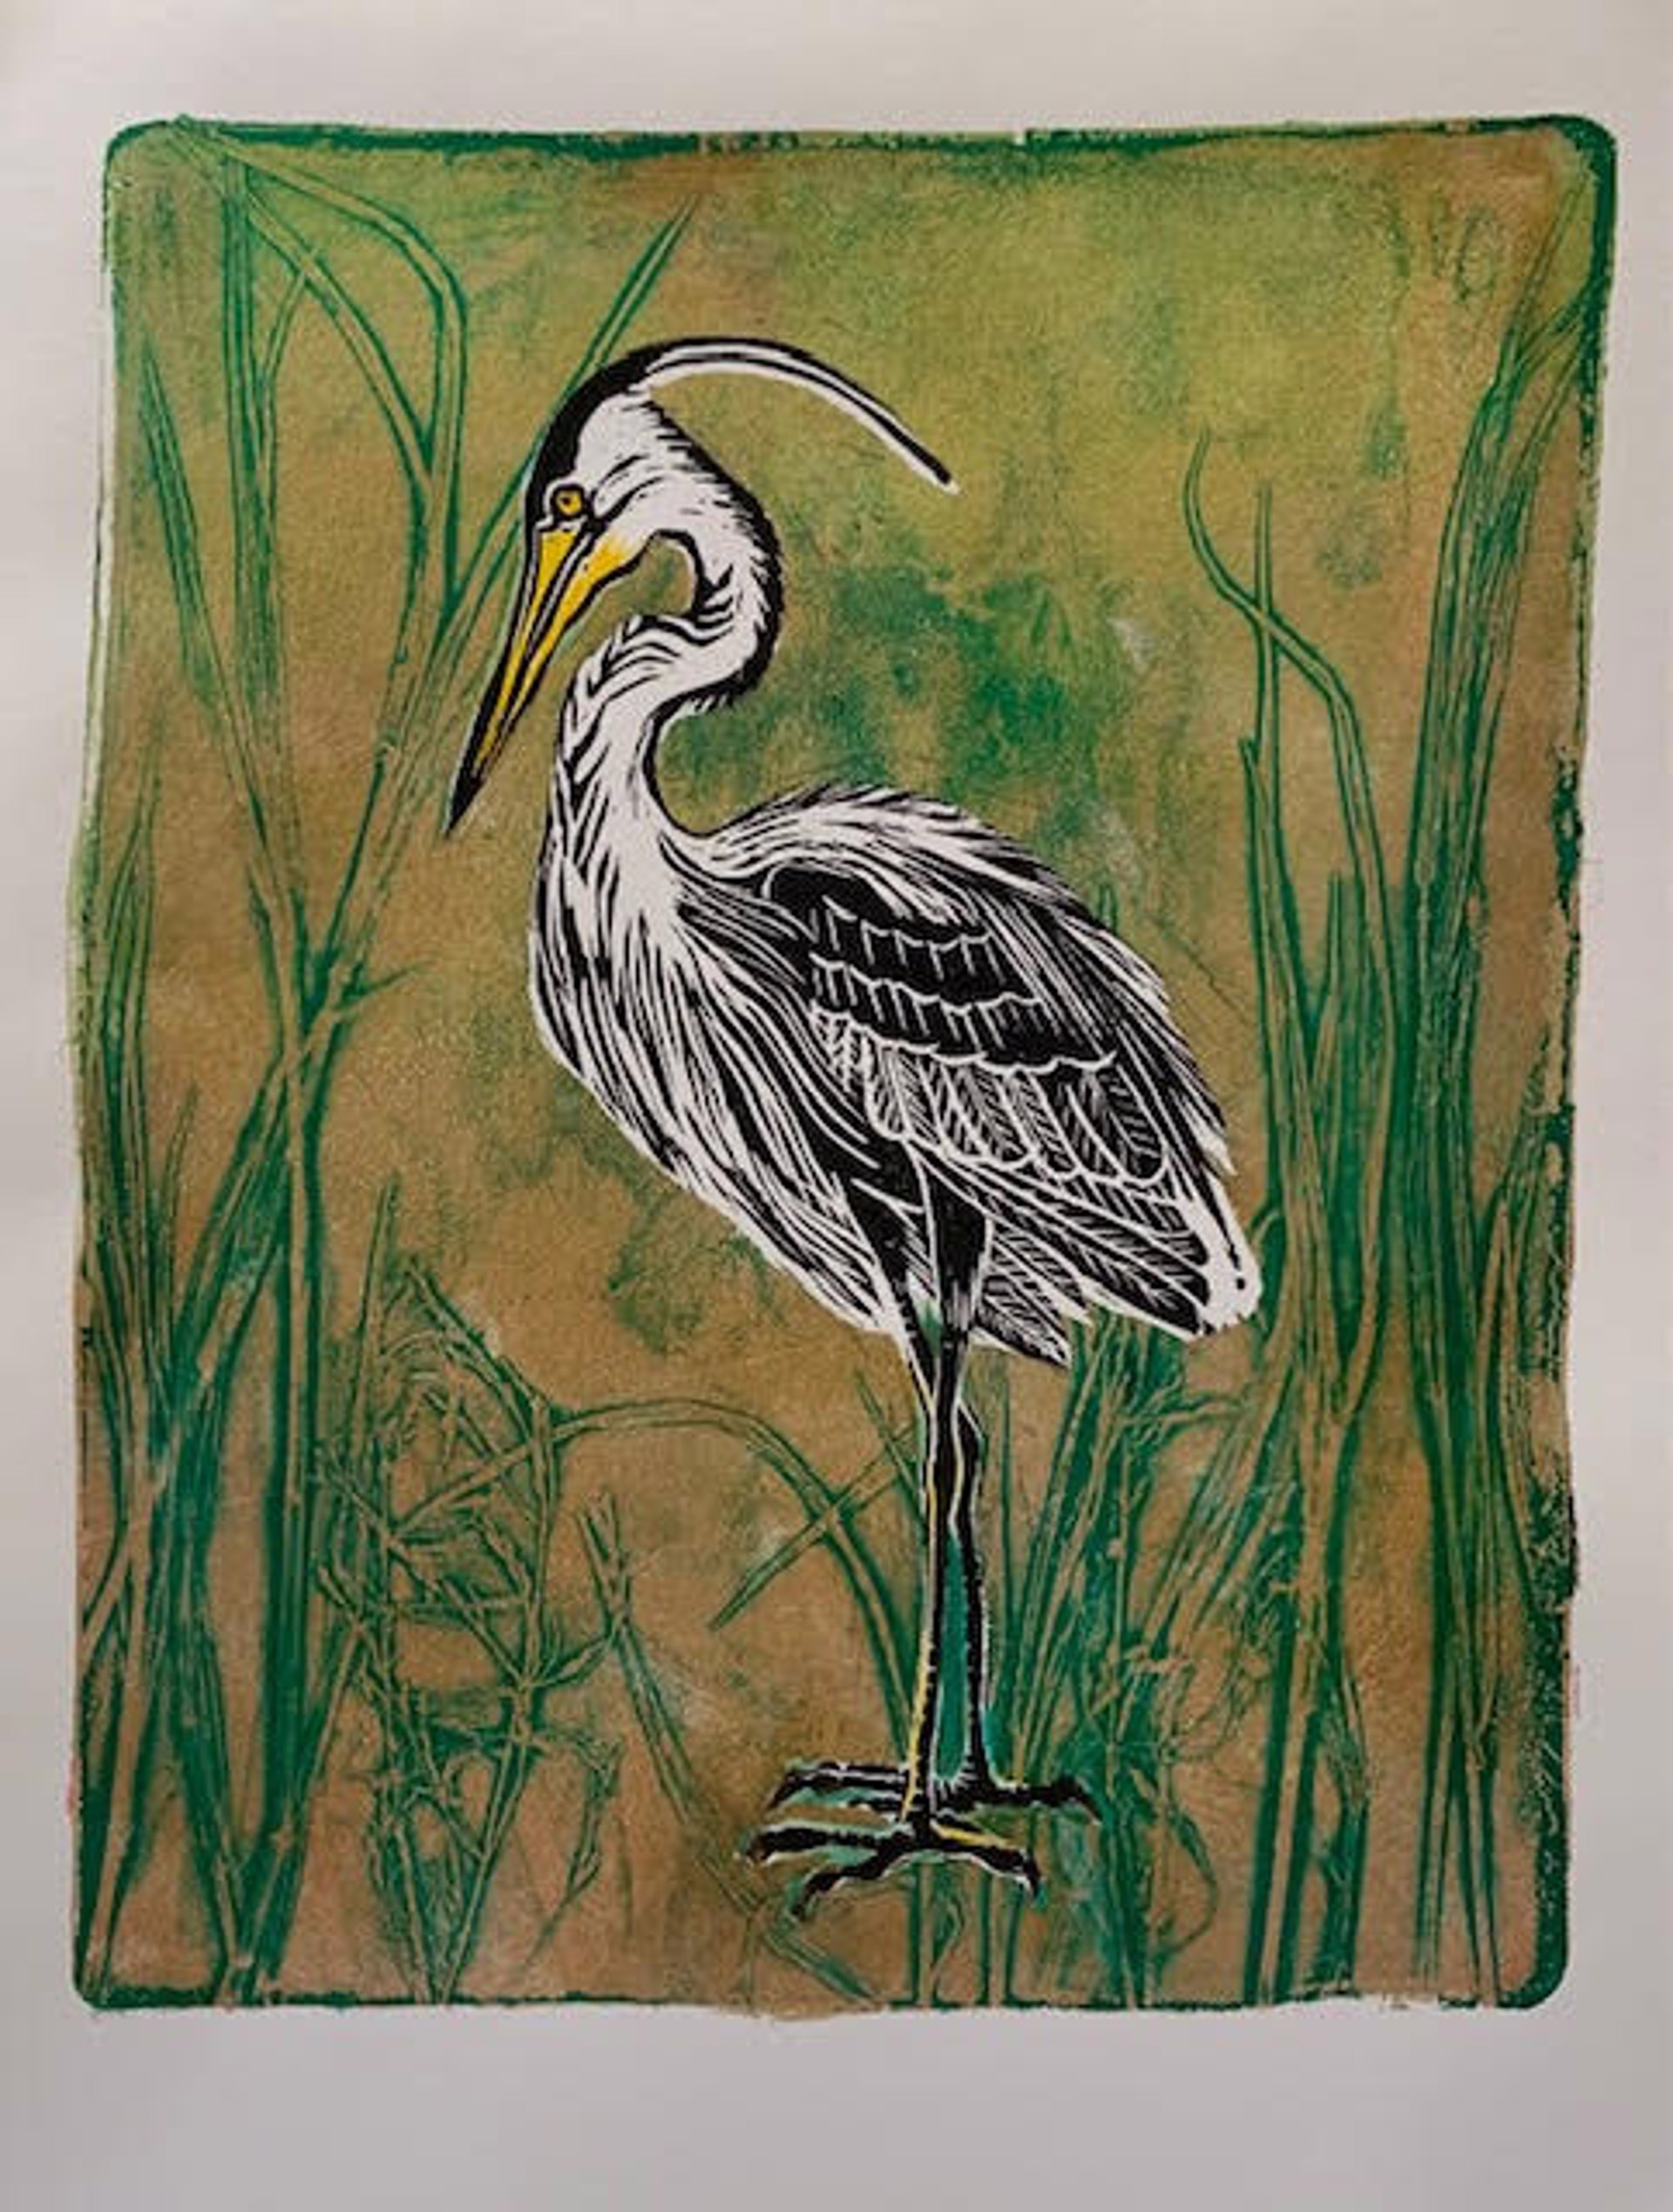 Heron and Grass by Fumi Matsumoto